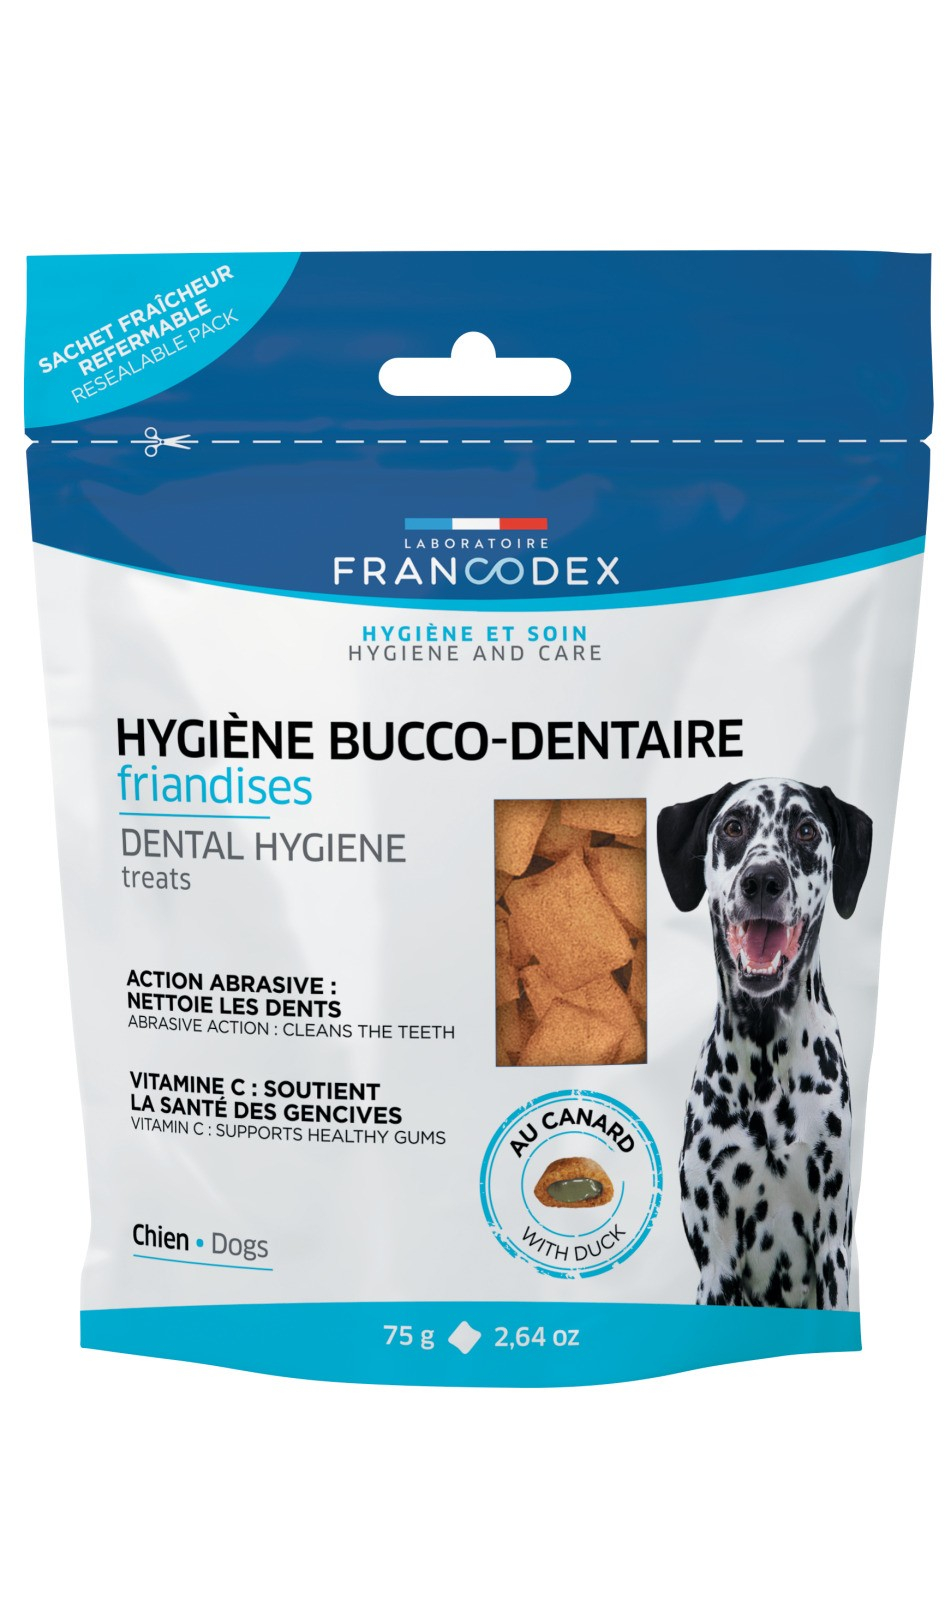 Francodex Snack Alimenti Complementari per cuccioli & cani